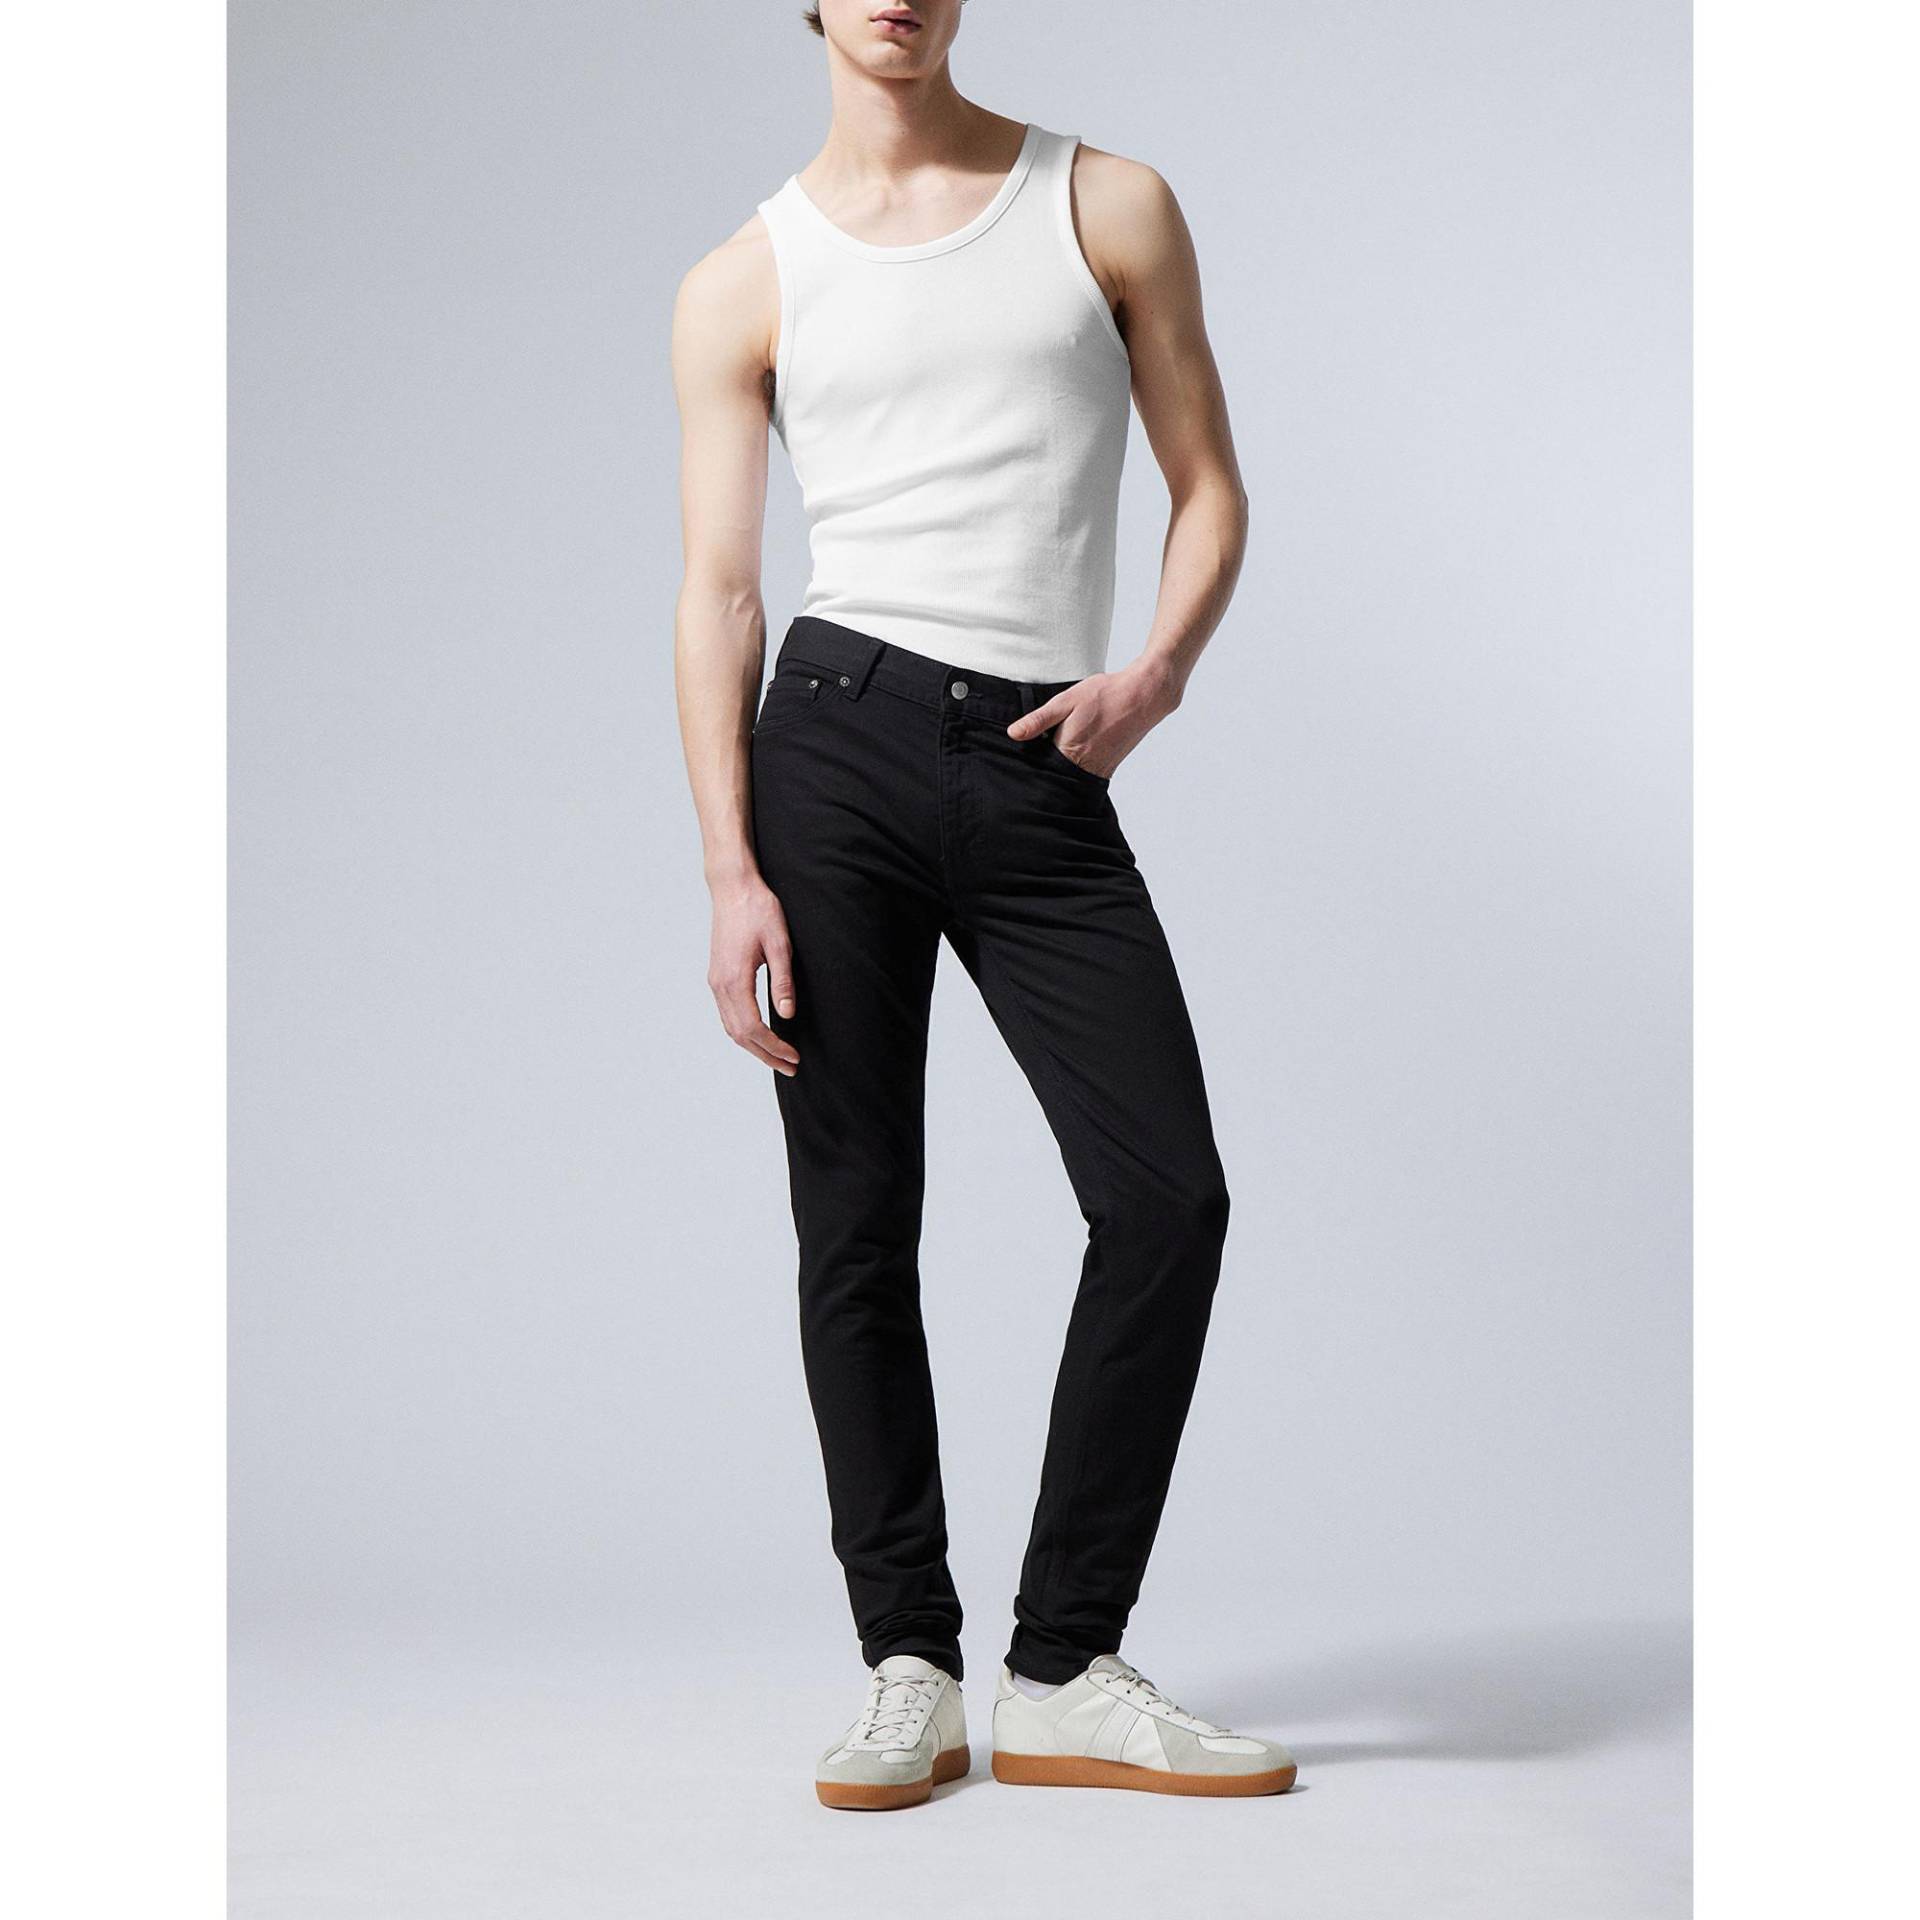 Jeans, Skinny Fit Herren Black L30/W29 von WEEKDAY